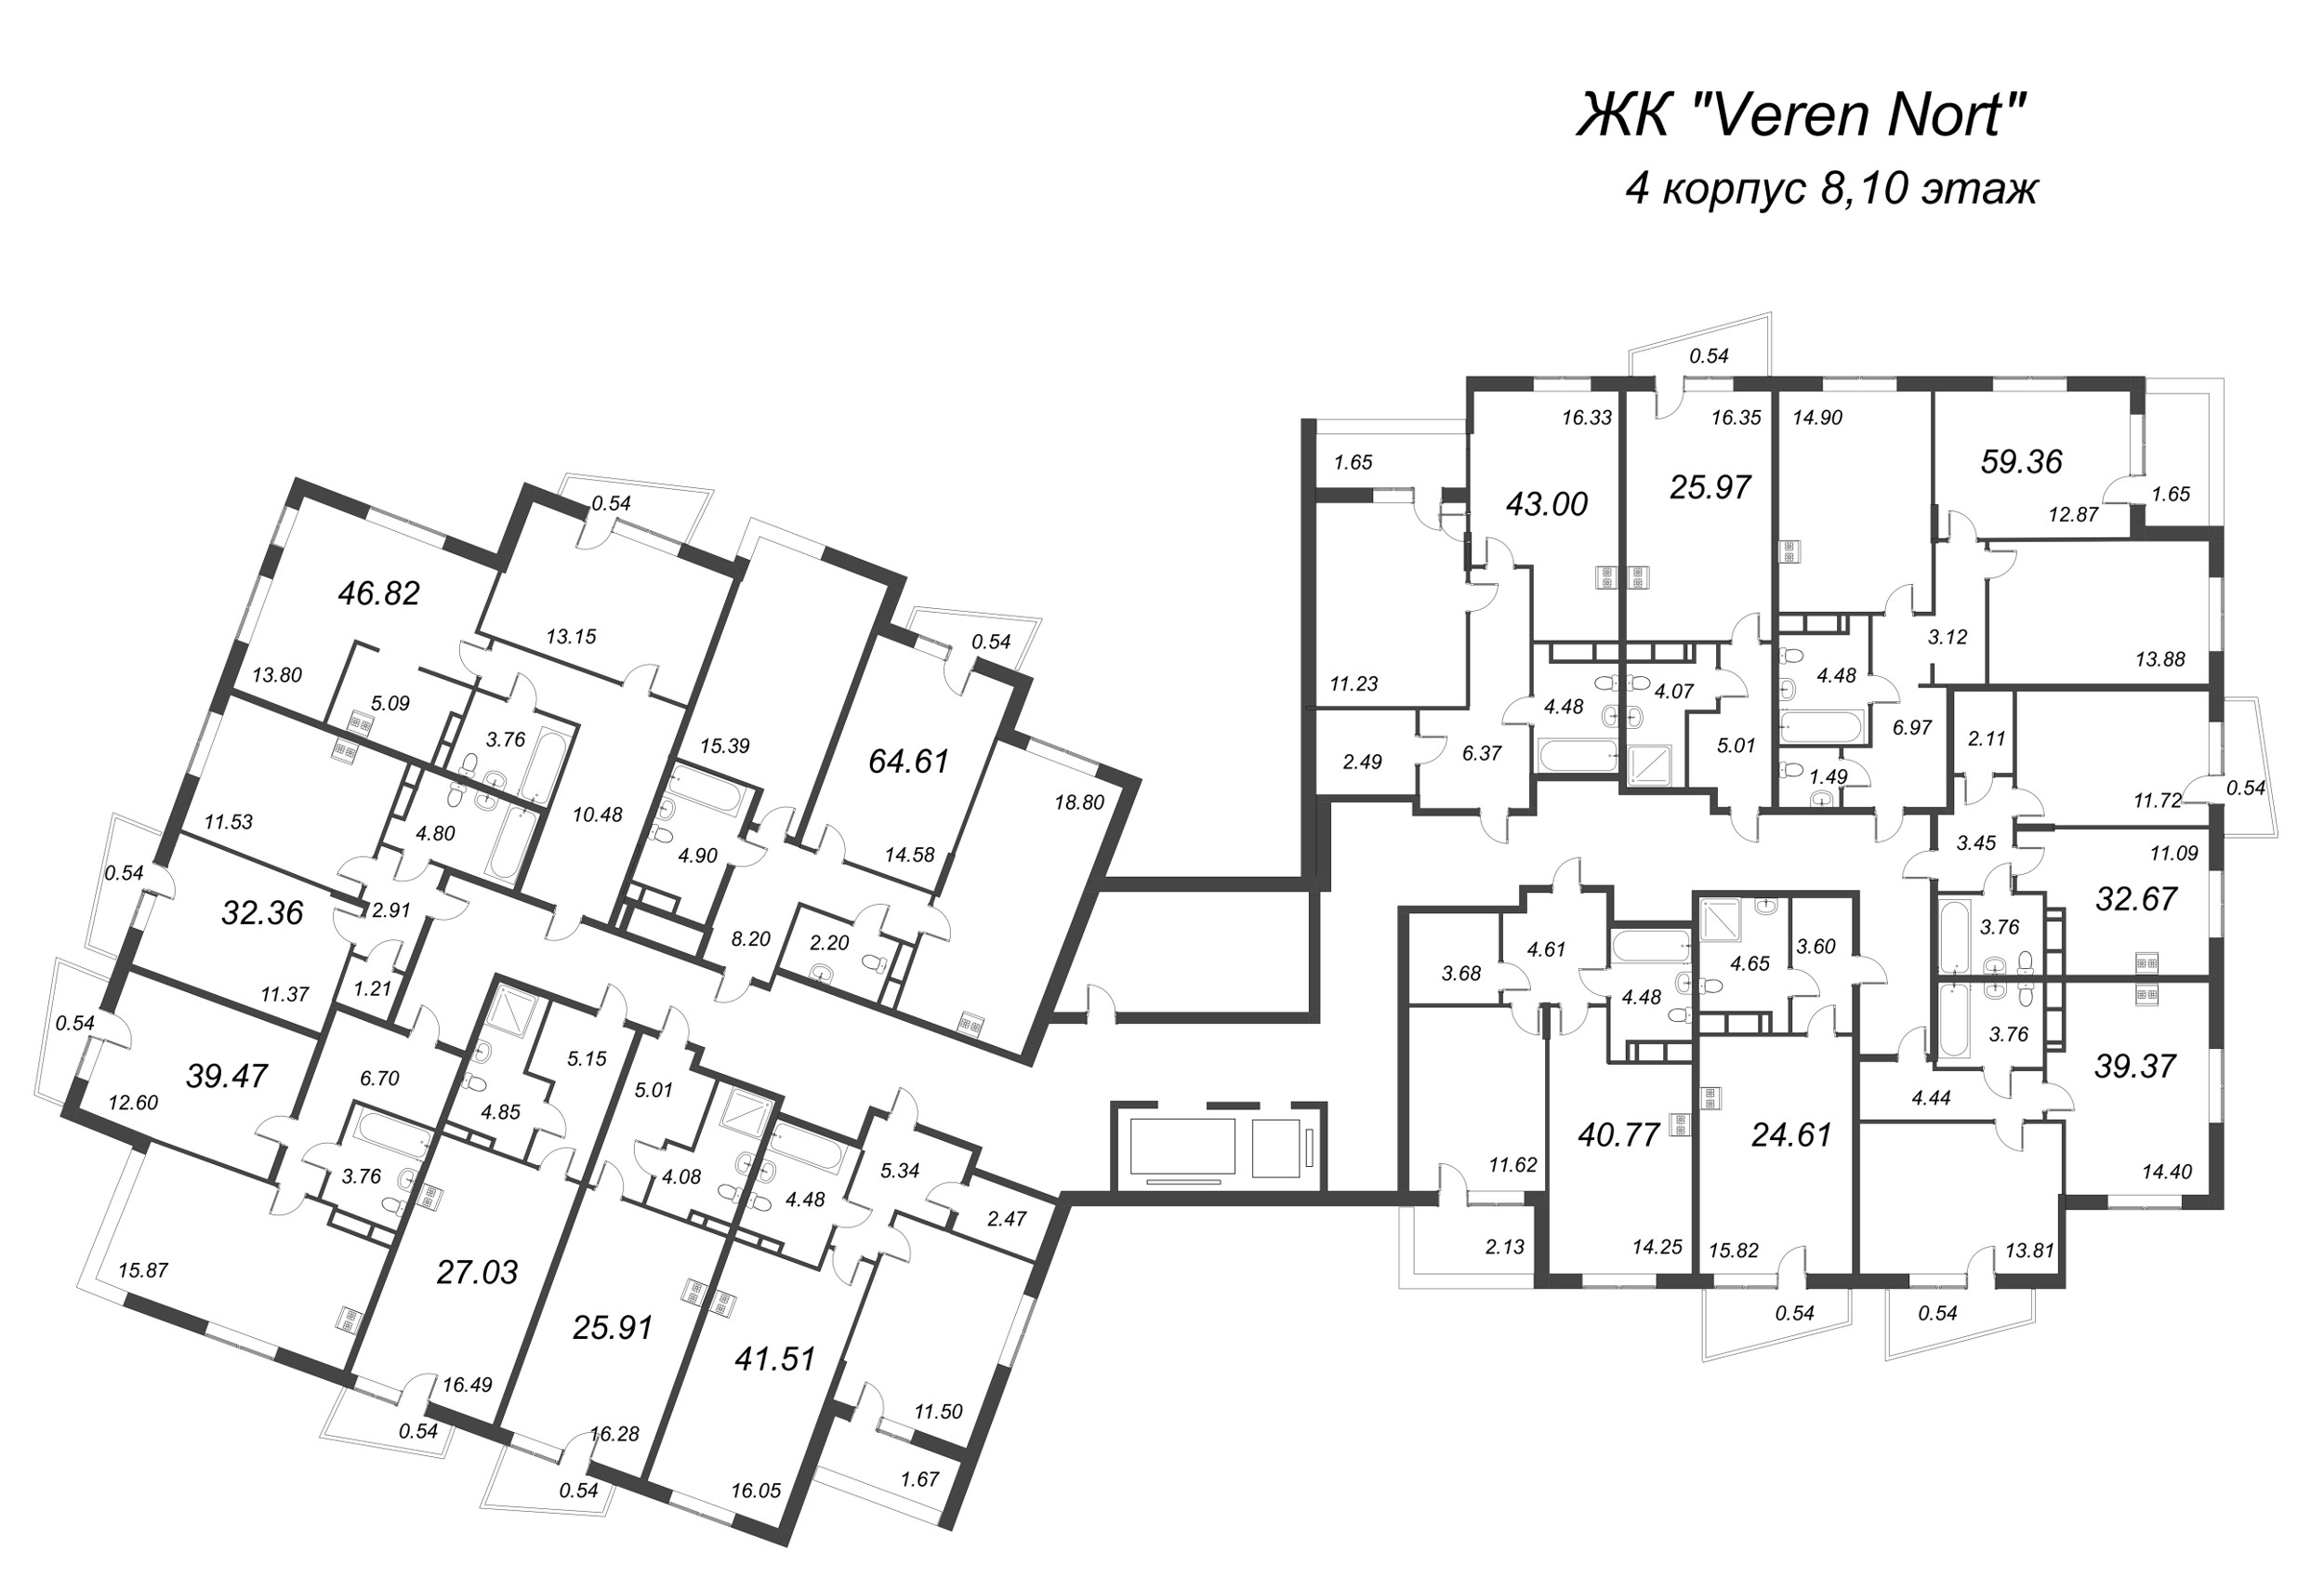 3-комнатная (Евро) квартира, 59.36 м² в ЖК "VEREN NORT сертолово" - планировка этажа